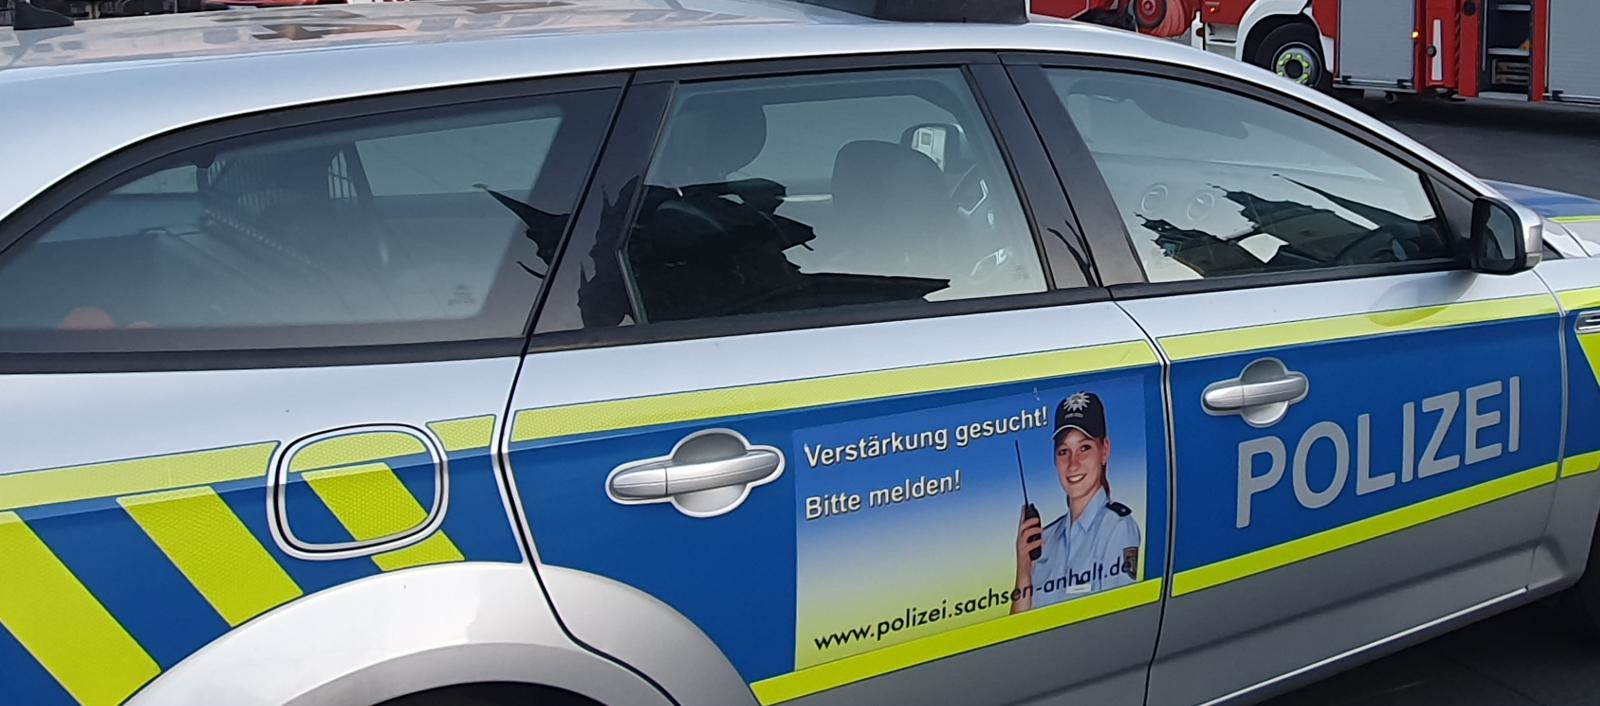 Wohnungsdurchsuchung in Magdeburg: 1,8kg Amphetamine gefunden